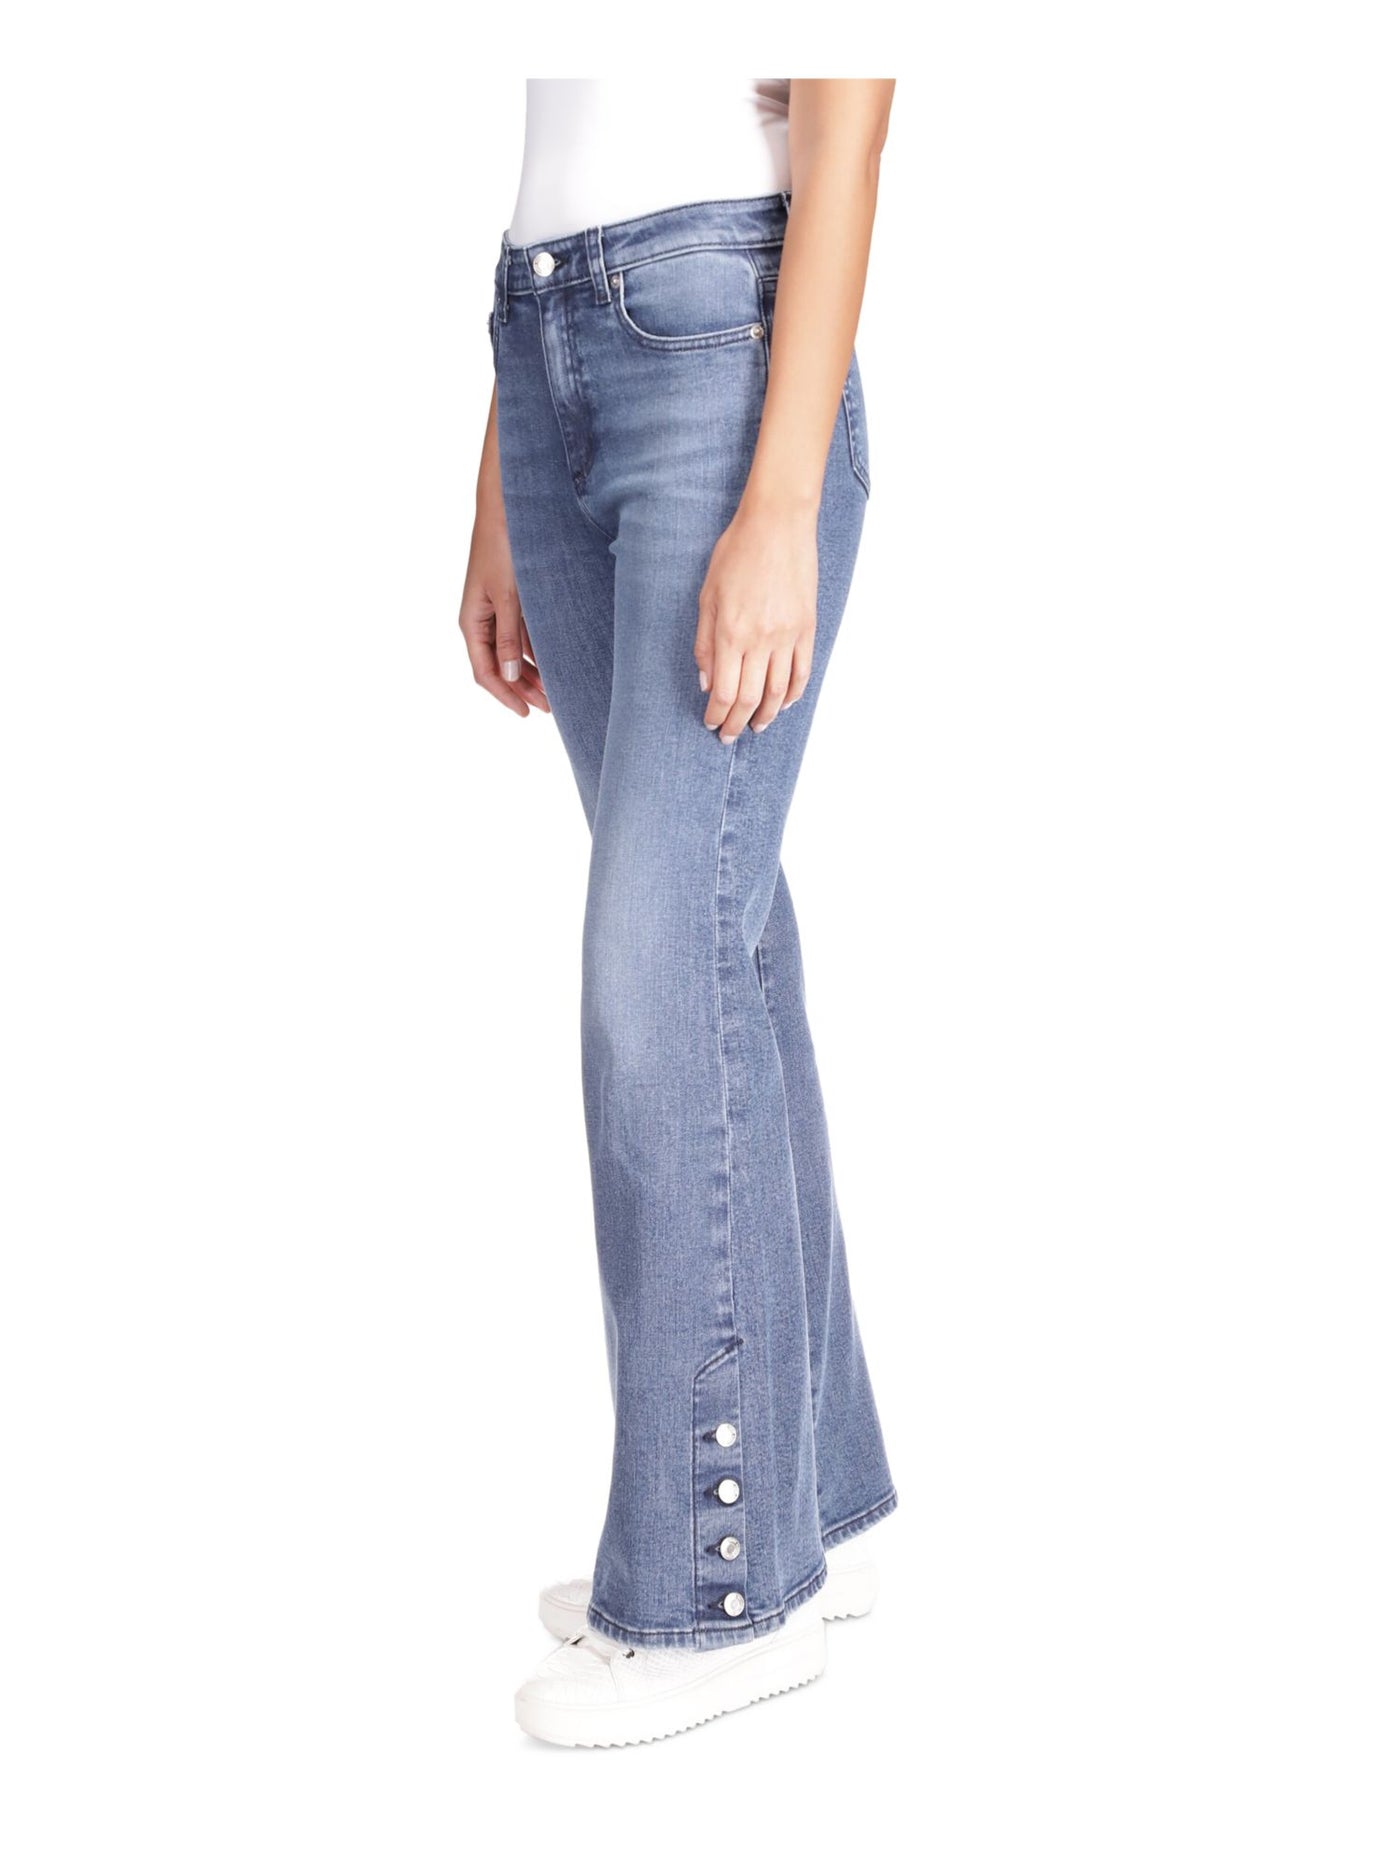 MICHAEL KORS Womens Blue Zippered Pocketed Button-hem Flare Leg High Waist Jeans Petites 14P